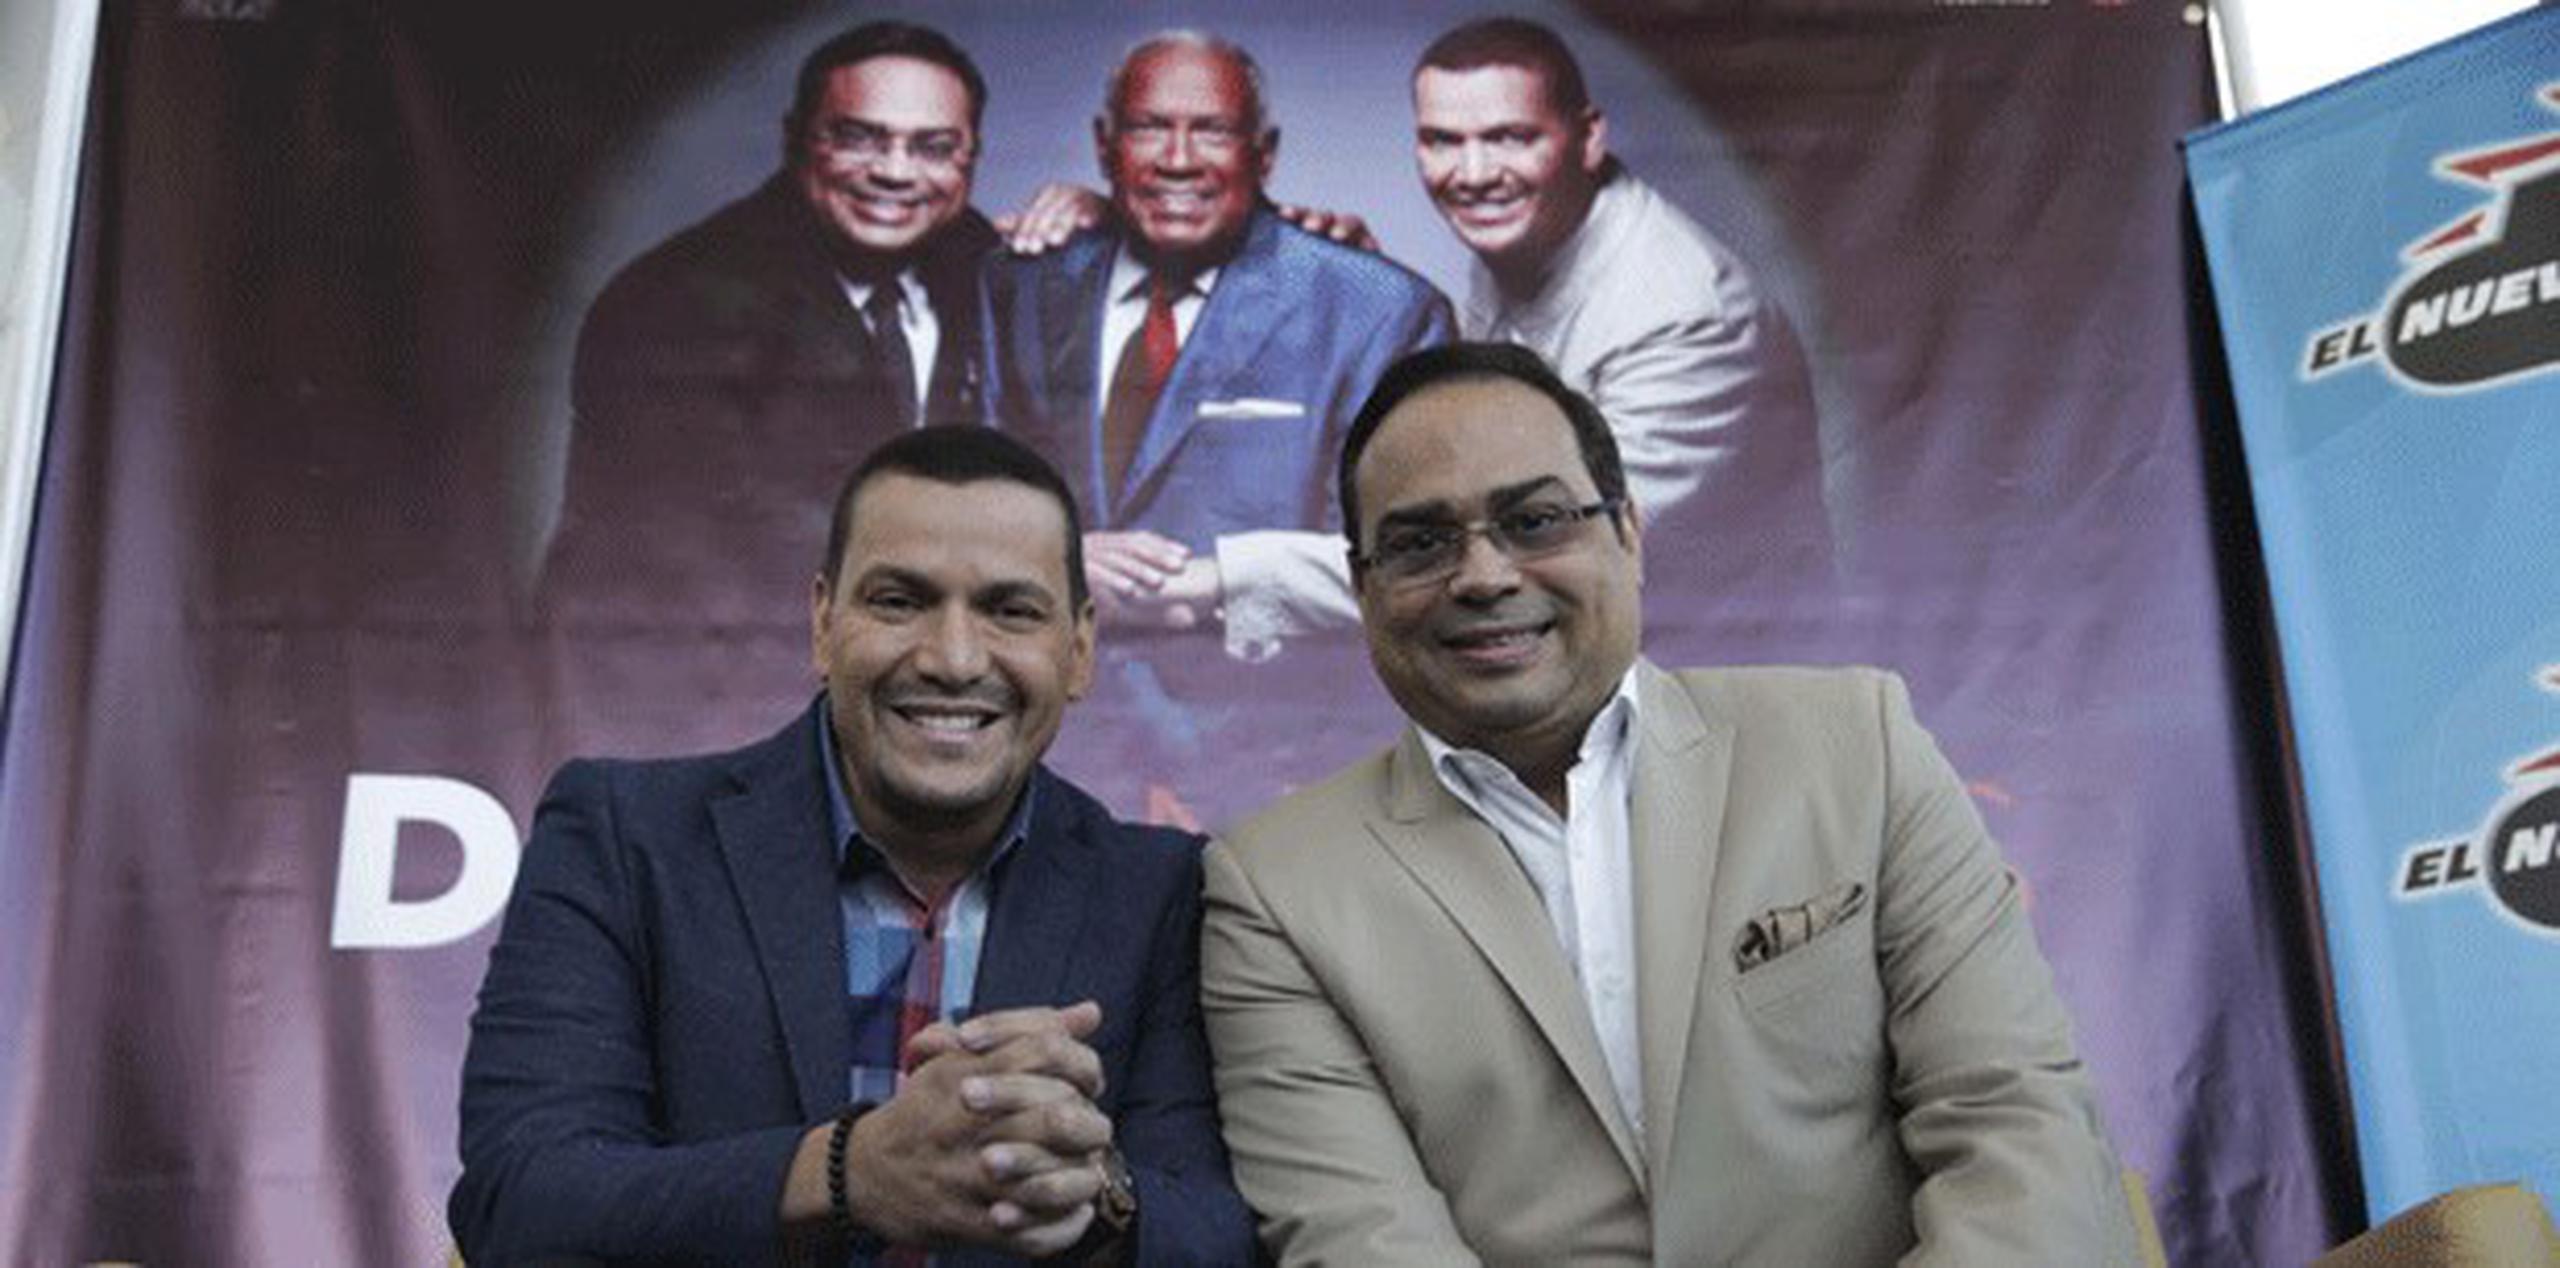 Gilberto y Víctor Manuelle presentarán “Dos soneros cantan a Cheo Feliciano” el 21 de junio en el Coliseo de Puerto Rico, en Hato Rey.